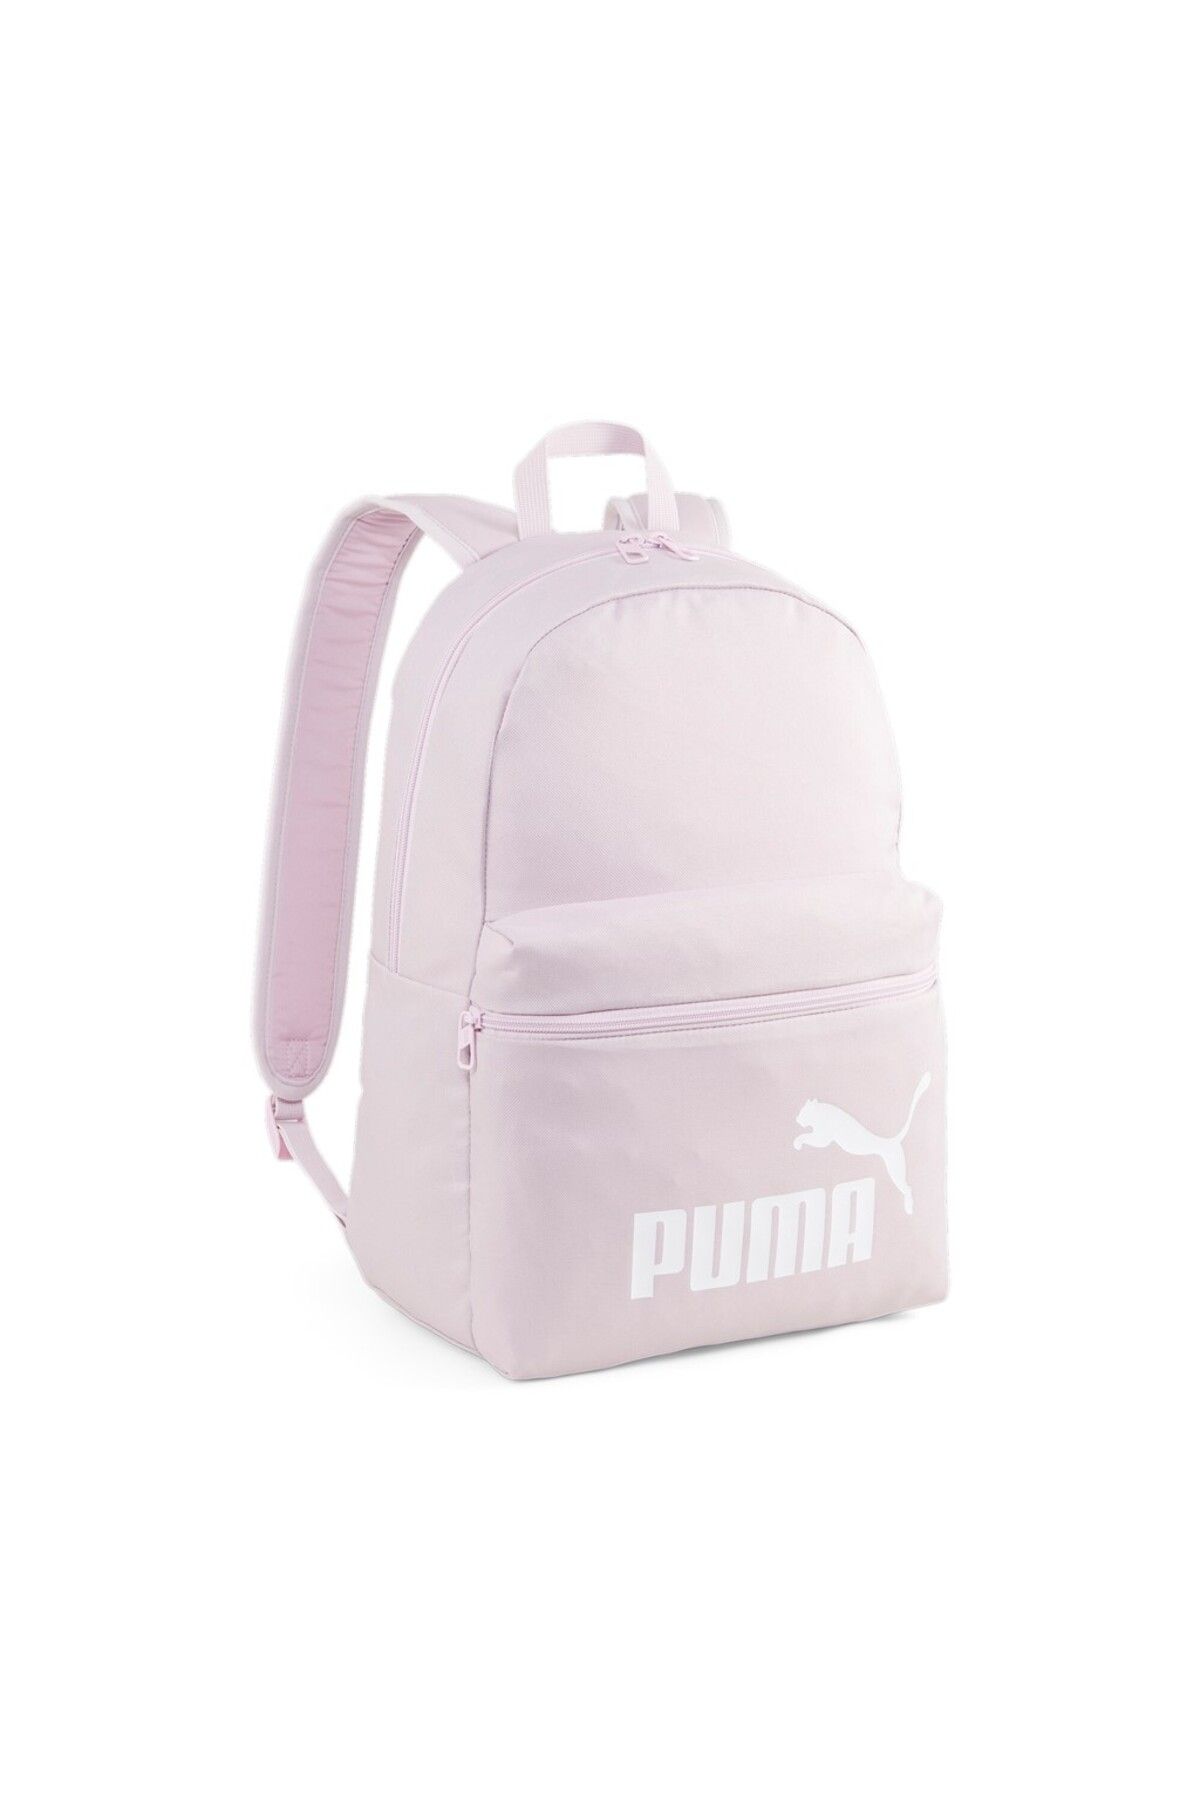 Puma Phase Backpack07994315